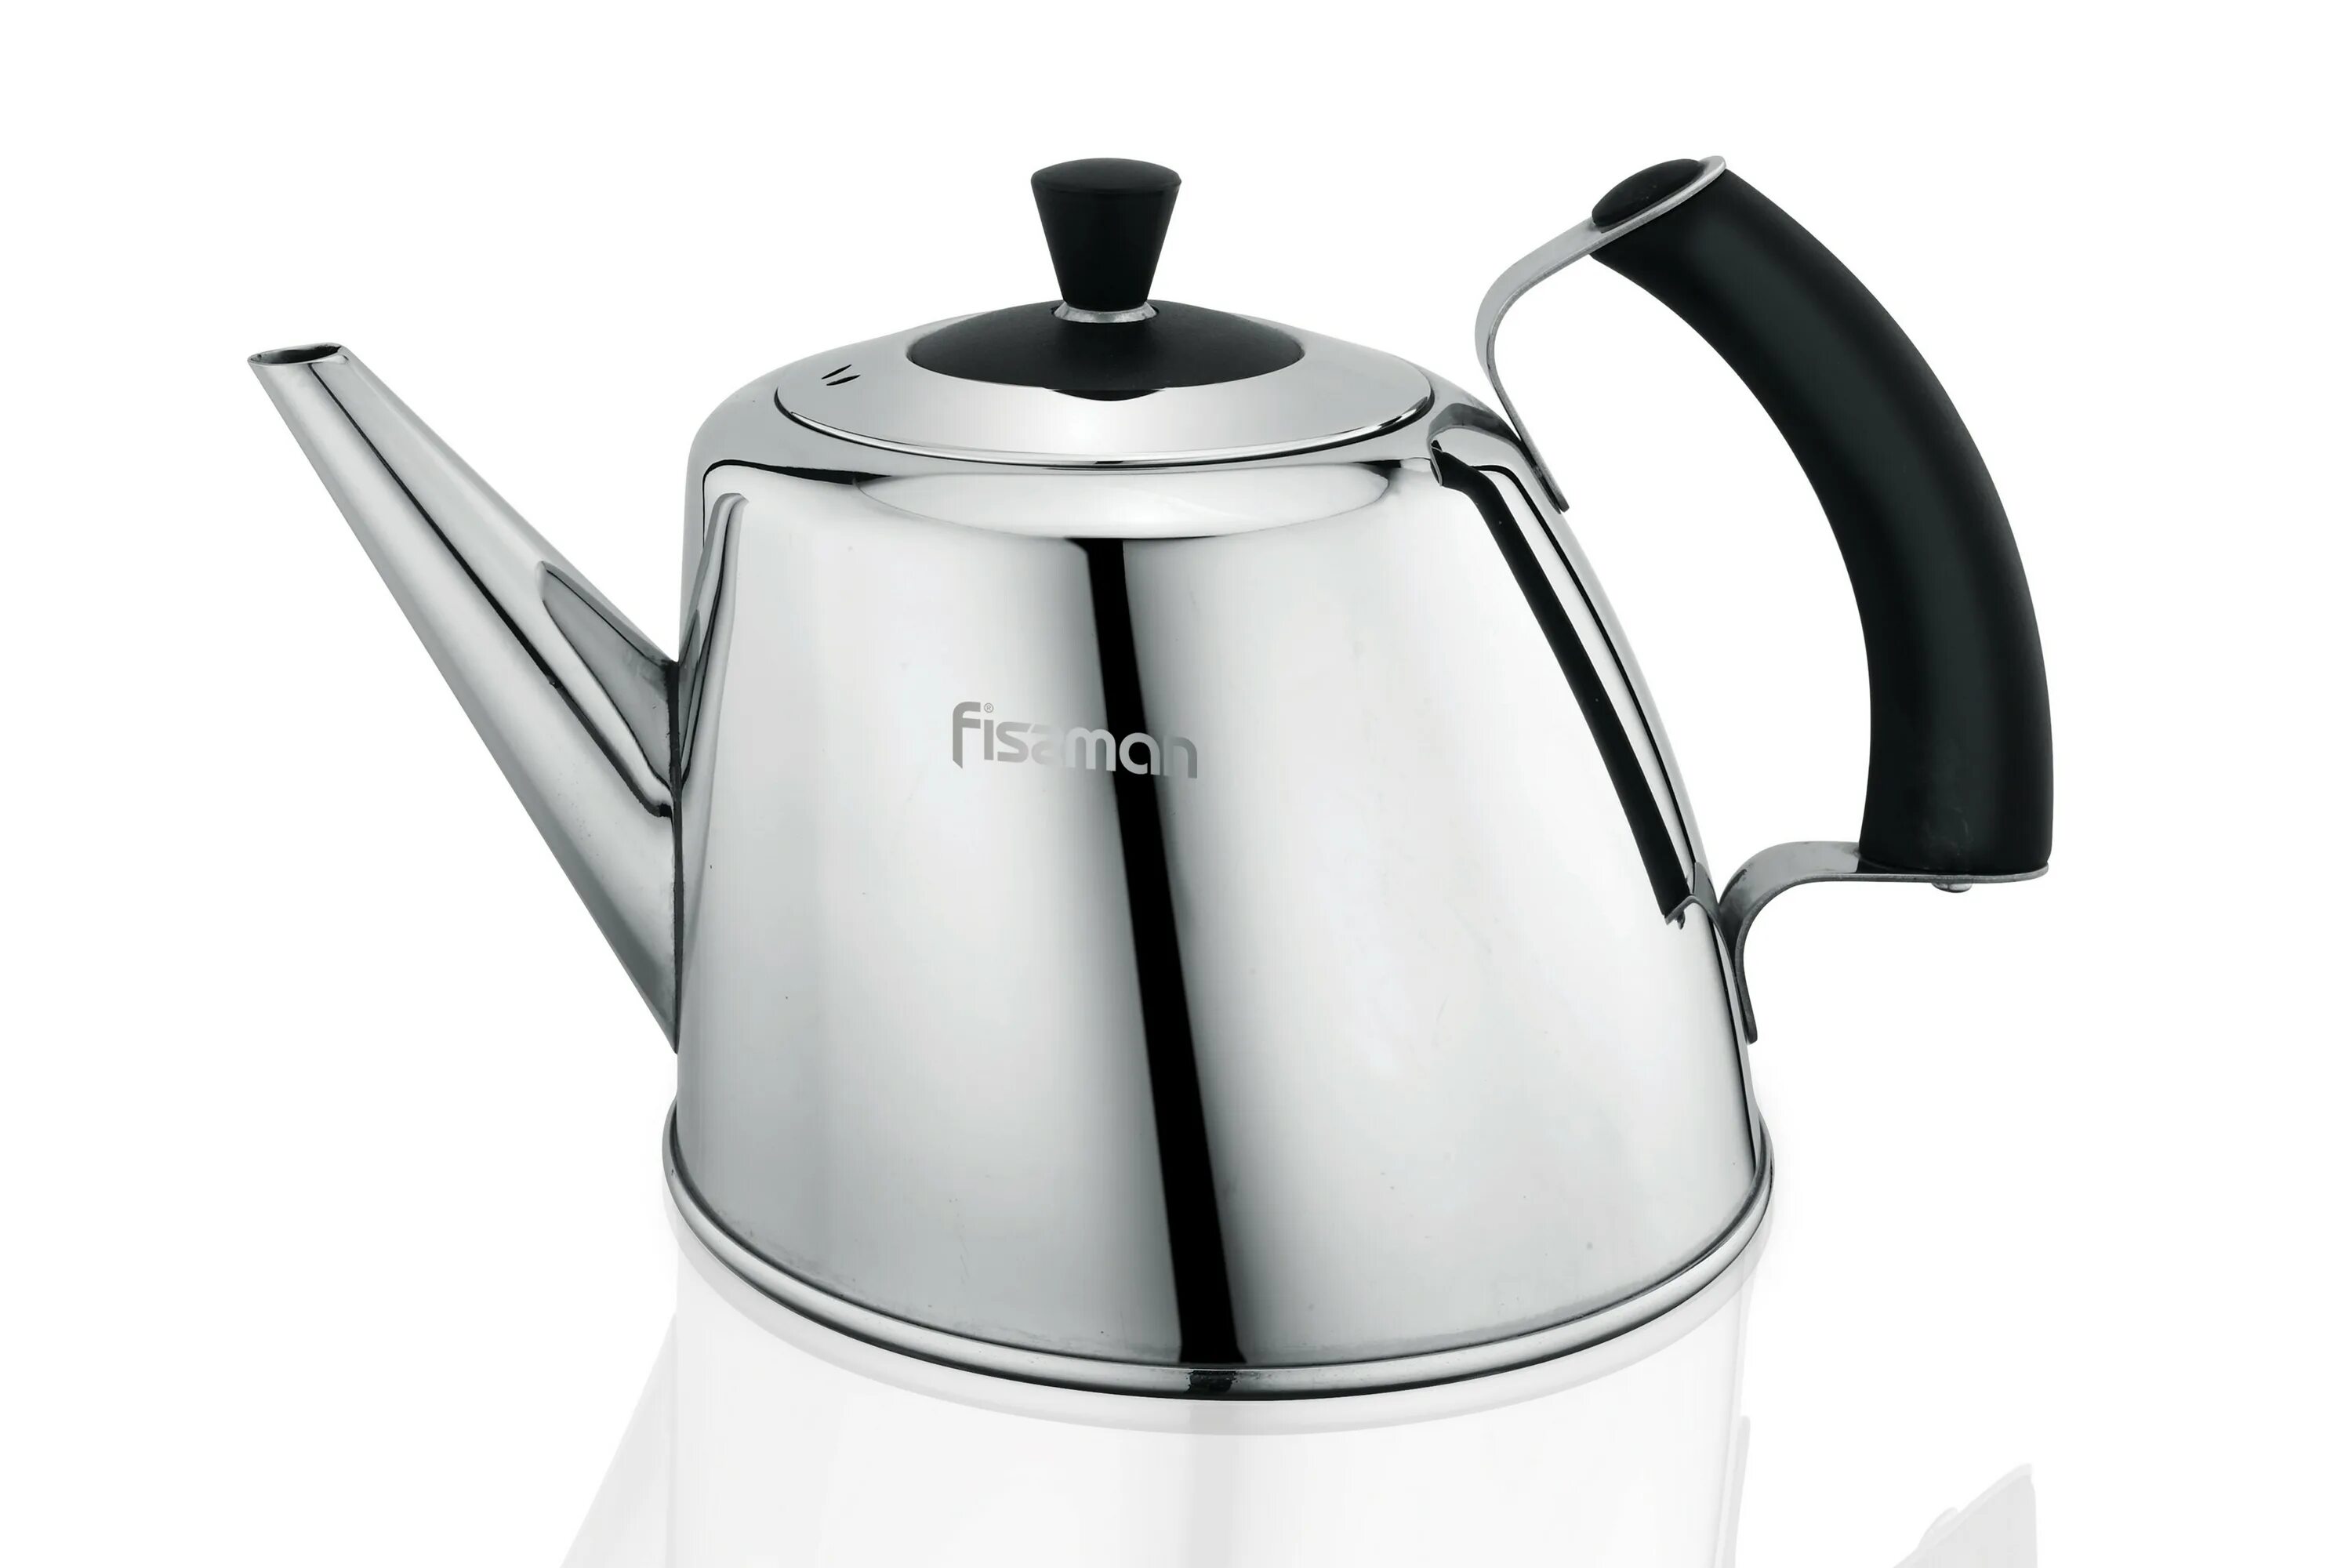 Чайник для плиты Fissman. 5957 Fissman чайник для кипячения воды Gemma 1,8л (нерж.сталь). Чайник Fissman 5929. Fissman чайник ml-25c.